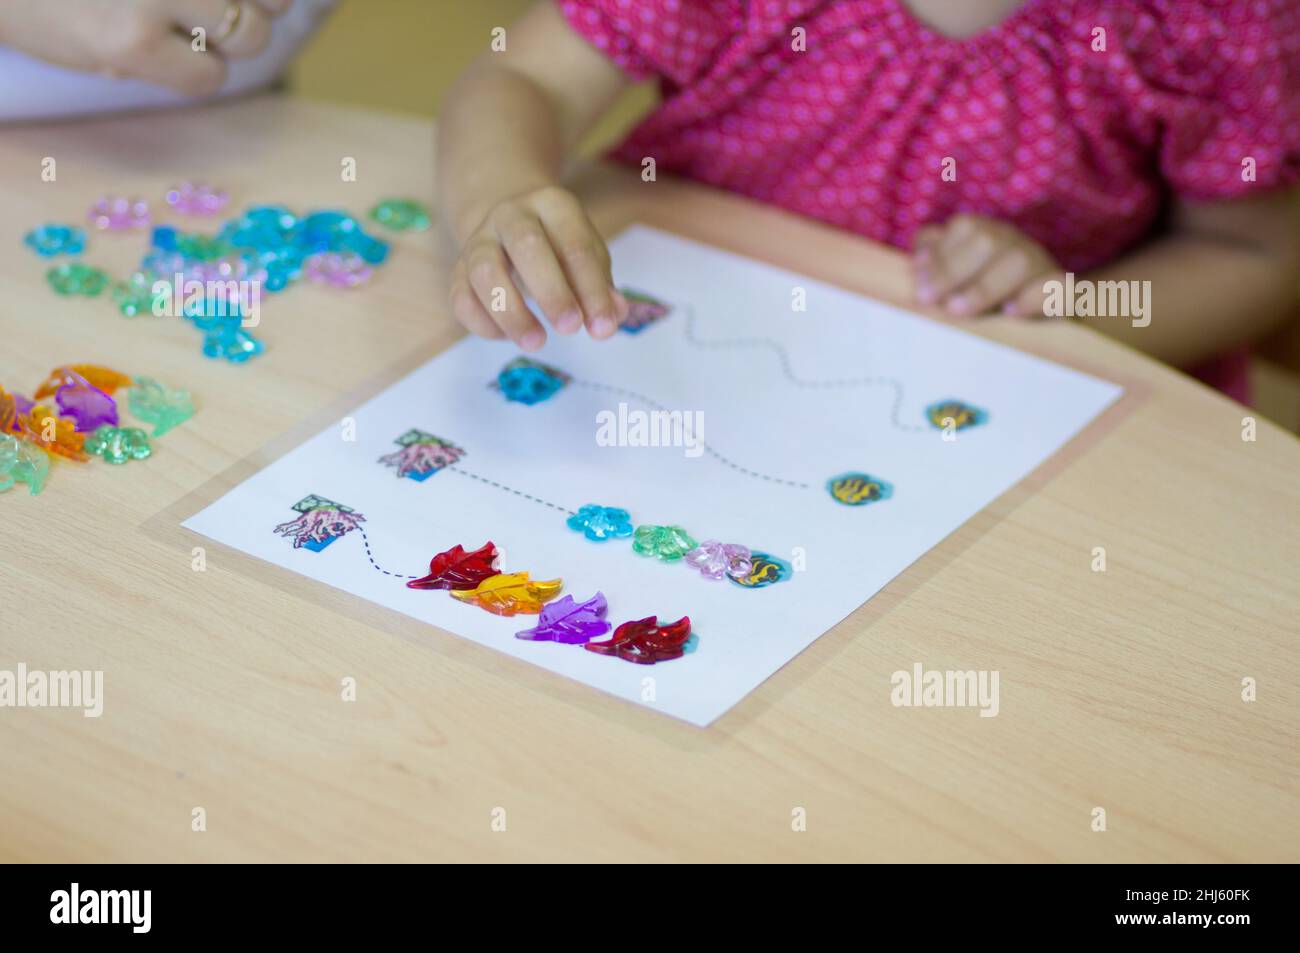 Kinderhände spielen mit bunten Steinen, um feinmotorische Fähigkeiten zu entwickeln Stockfoto